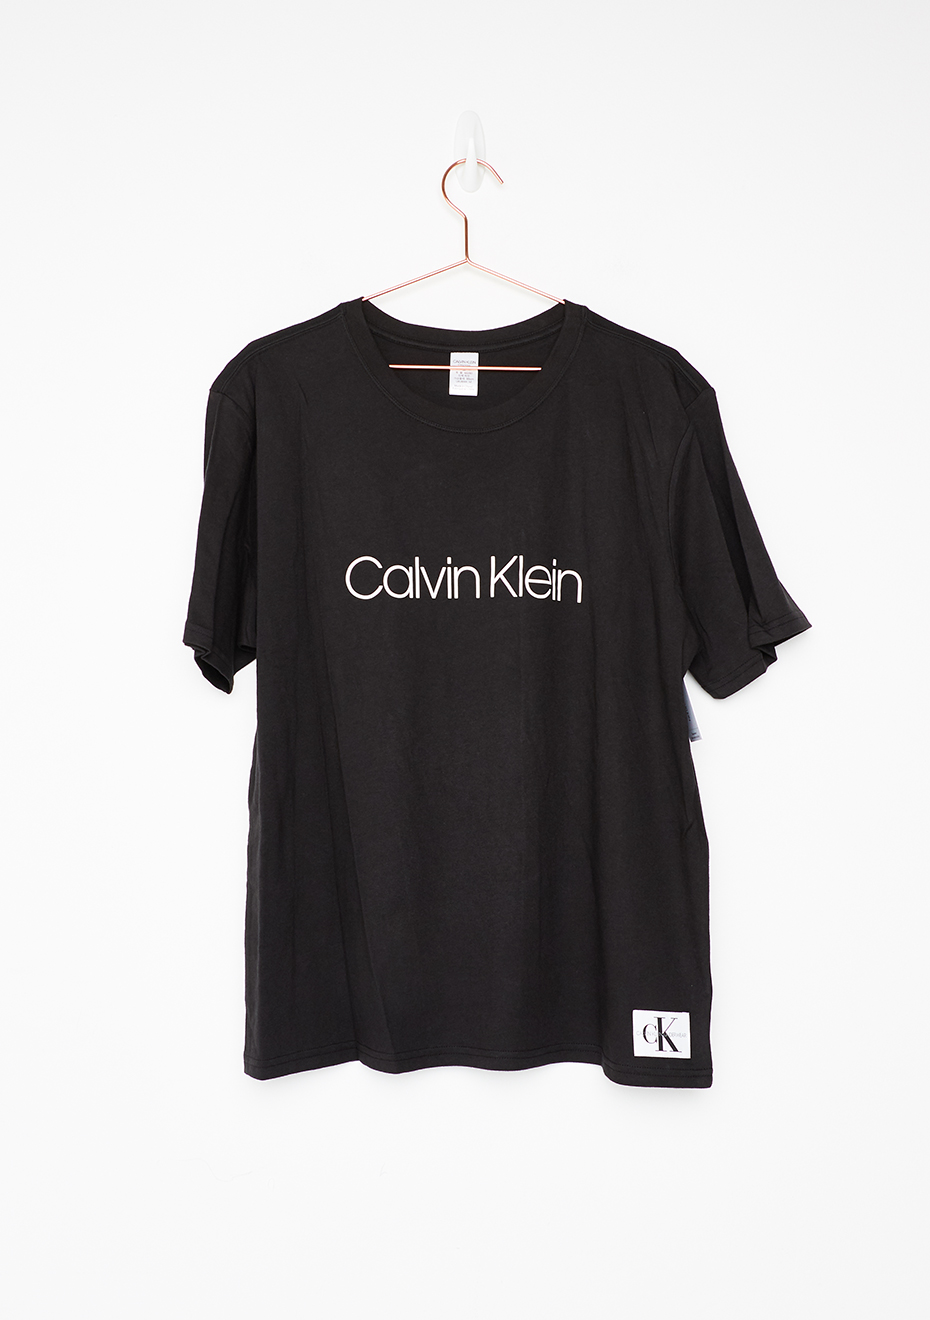 calvin klein t shirt womens sale